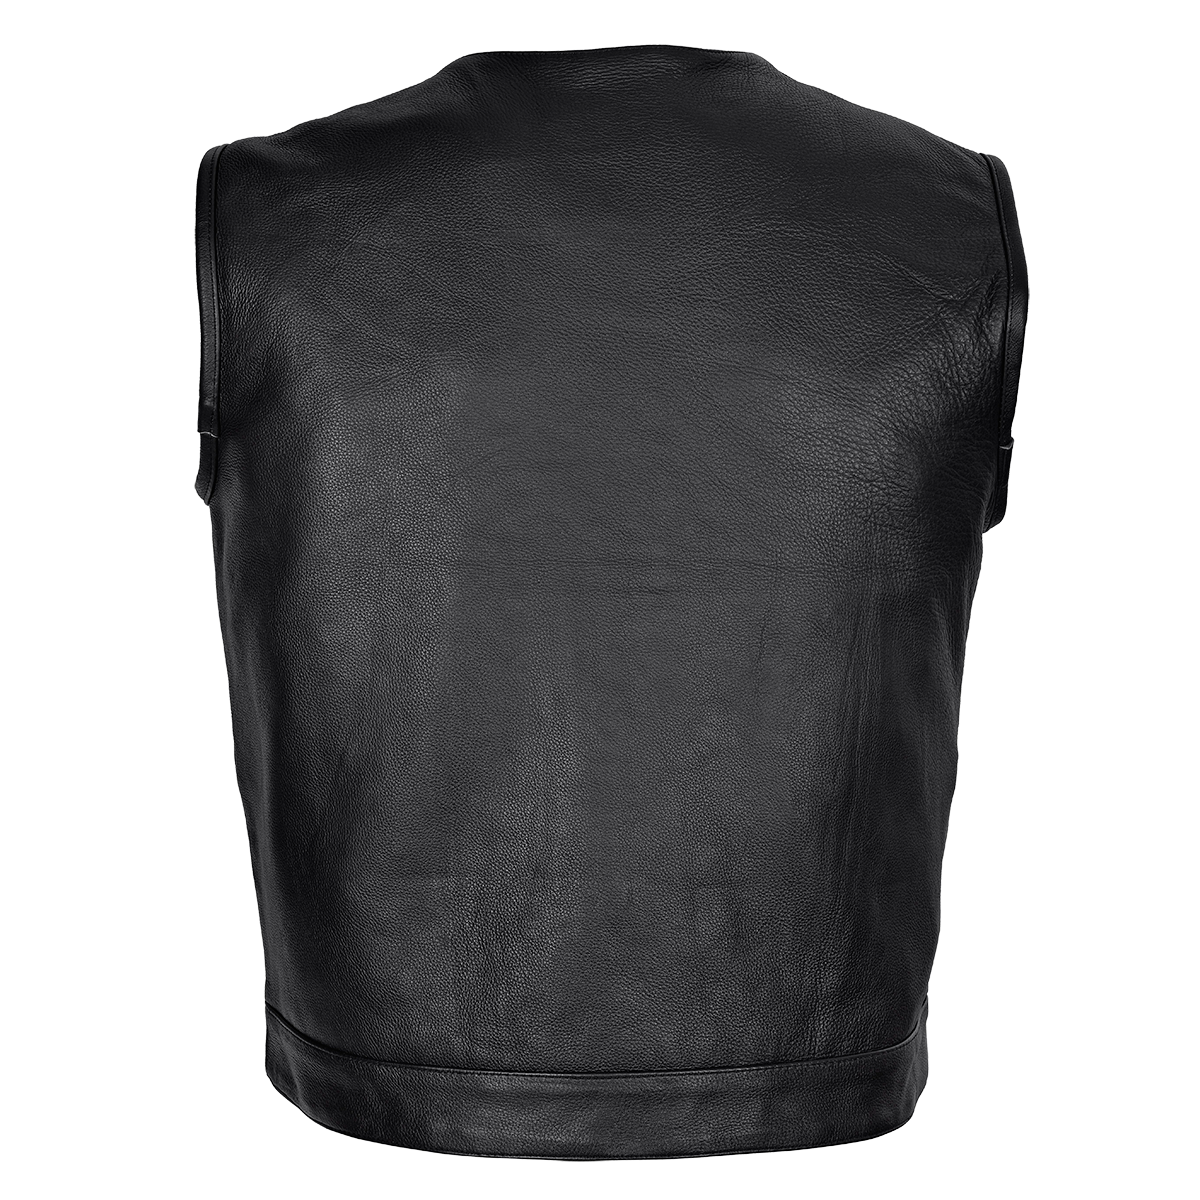 VL919 Men's Leather Club Vest with Quick Access Gun Pocket